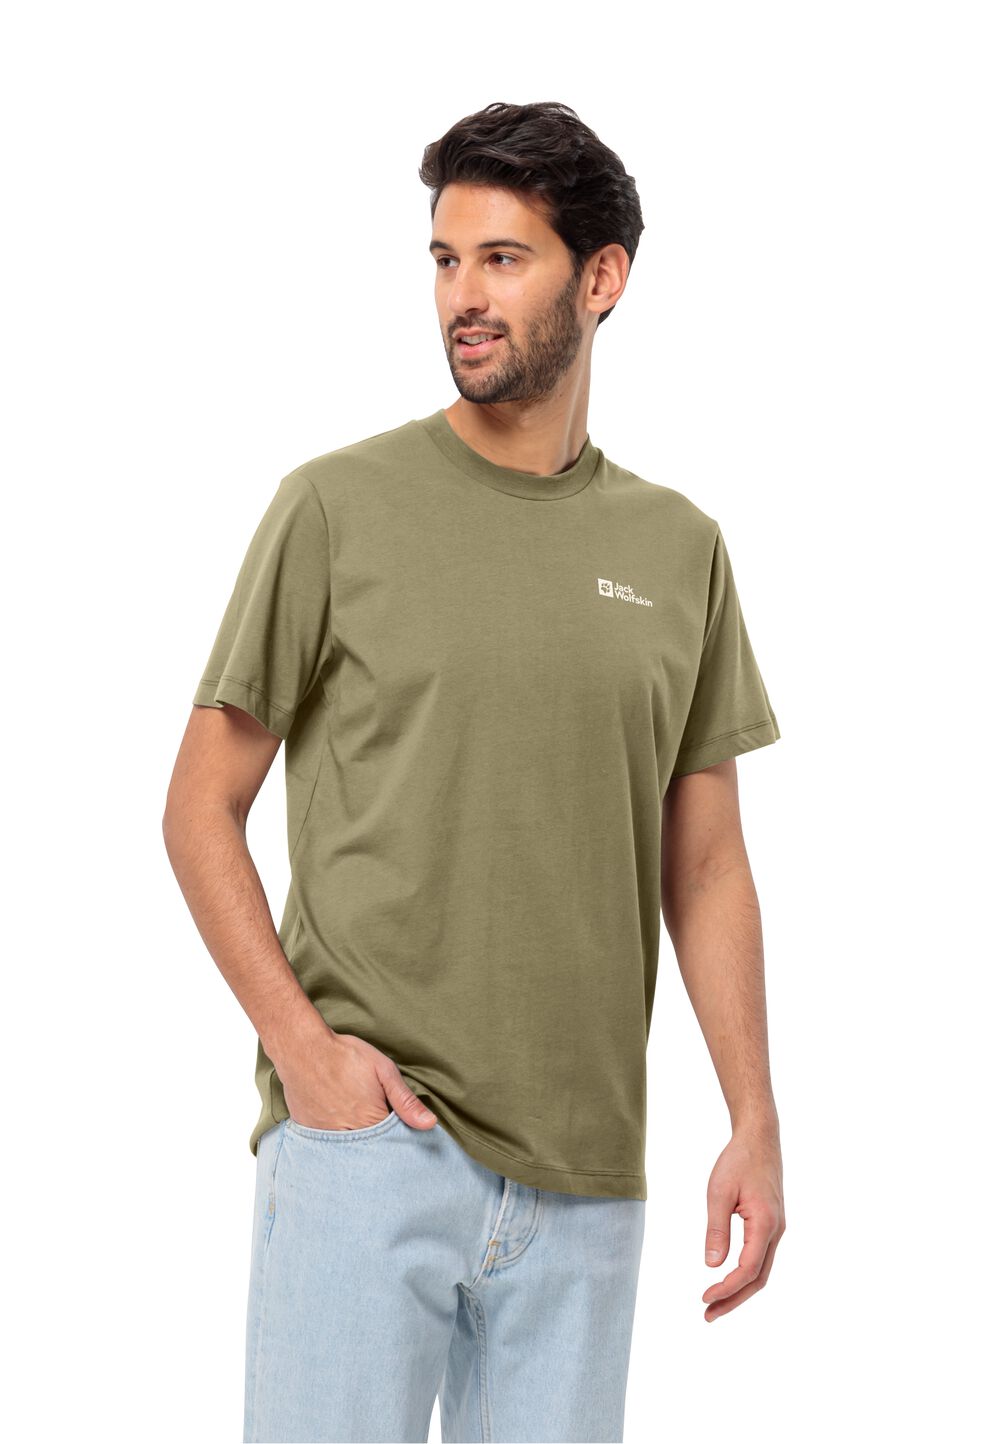 Jack Wolfskin Herren T-shirt aus Bio-Baumwolle Essential T-Shirt Men S braun bay leaf von Jack Wolfskin